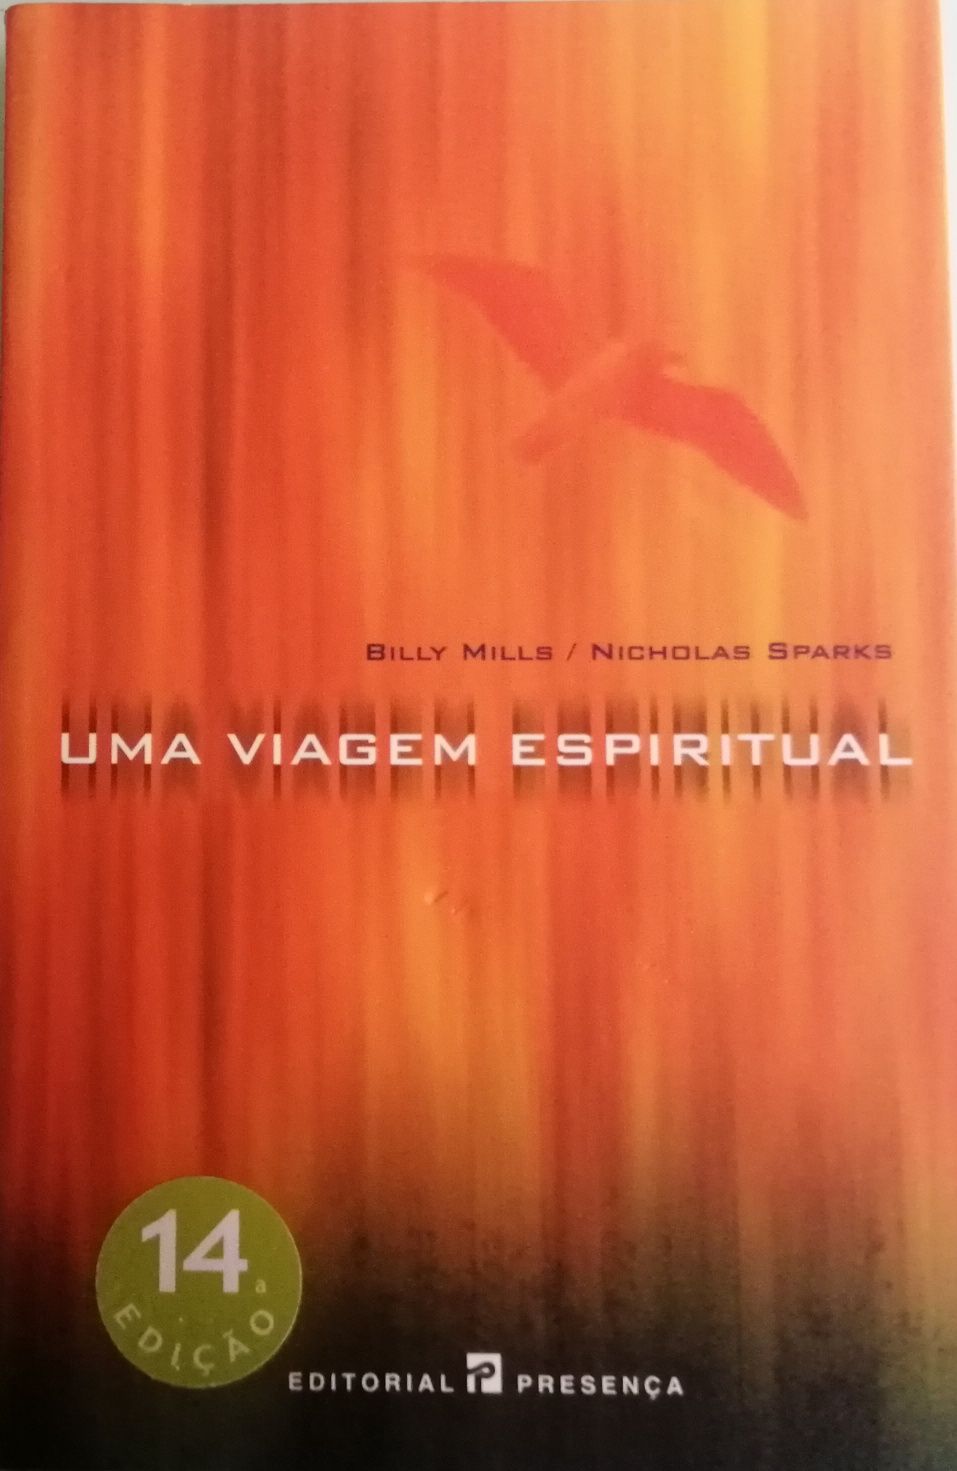 Livro "Uma Viagem Espiritual"